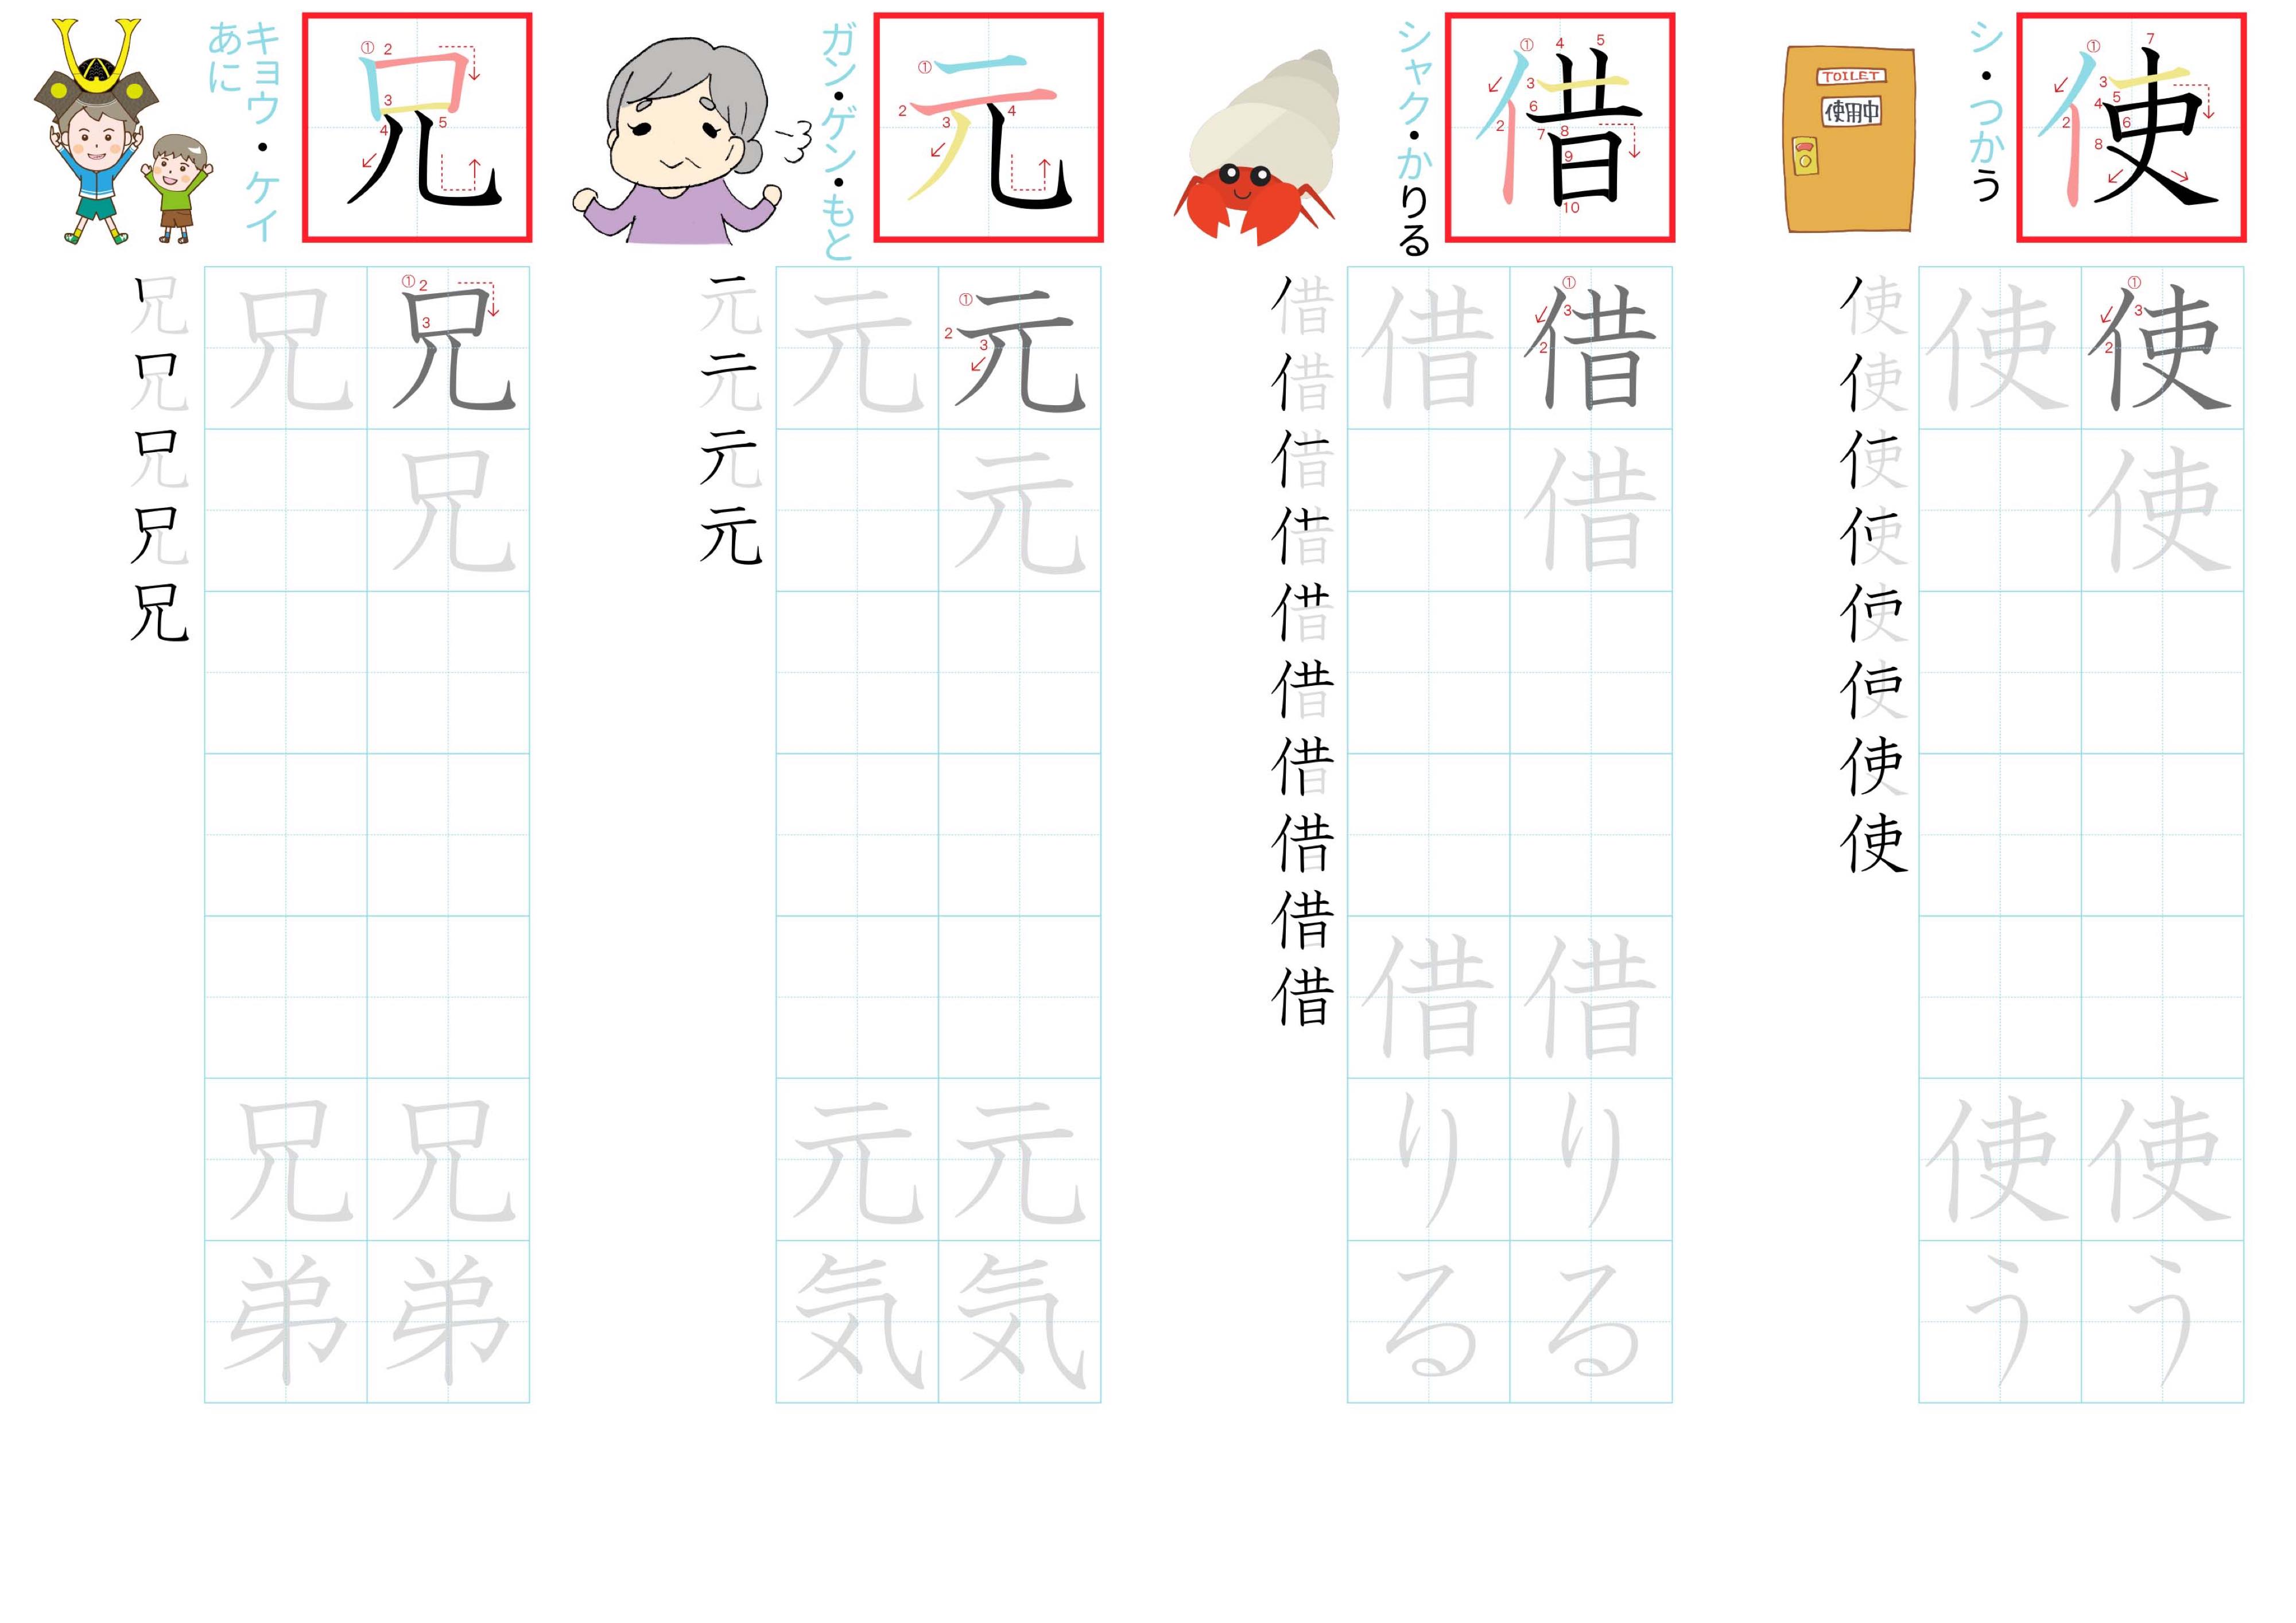 kanji-practice-card-n4-japanese-024